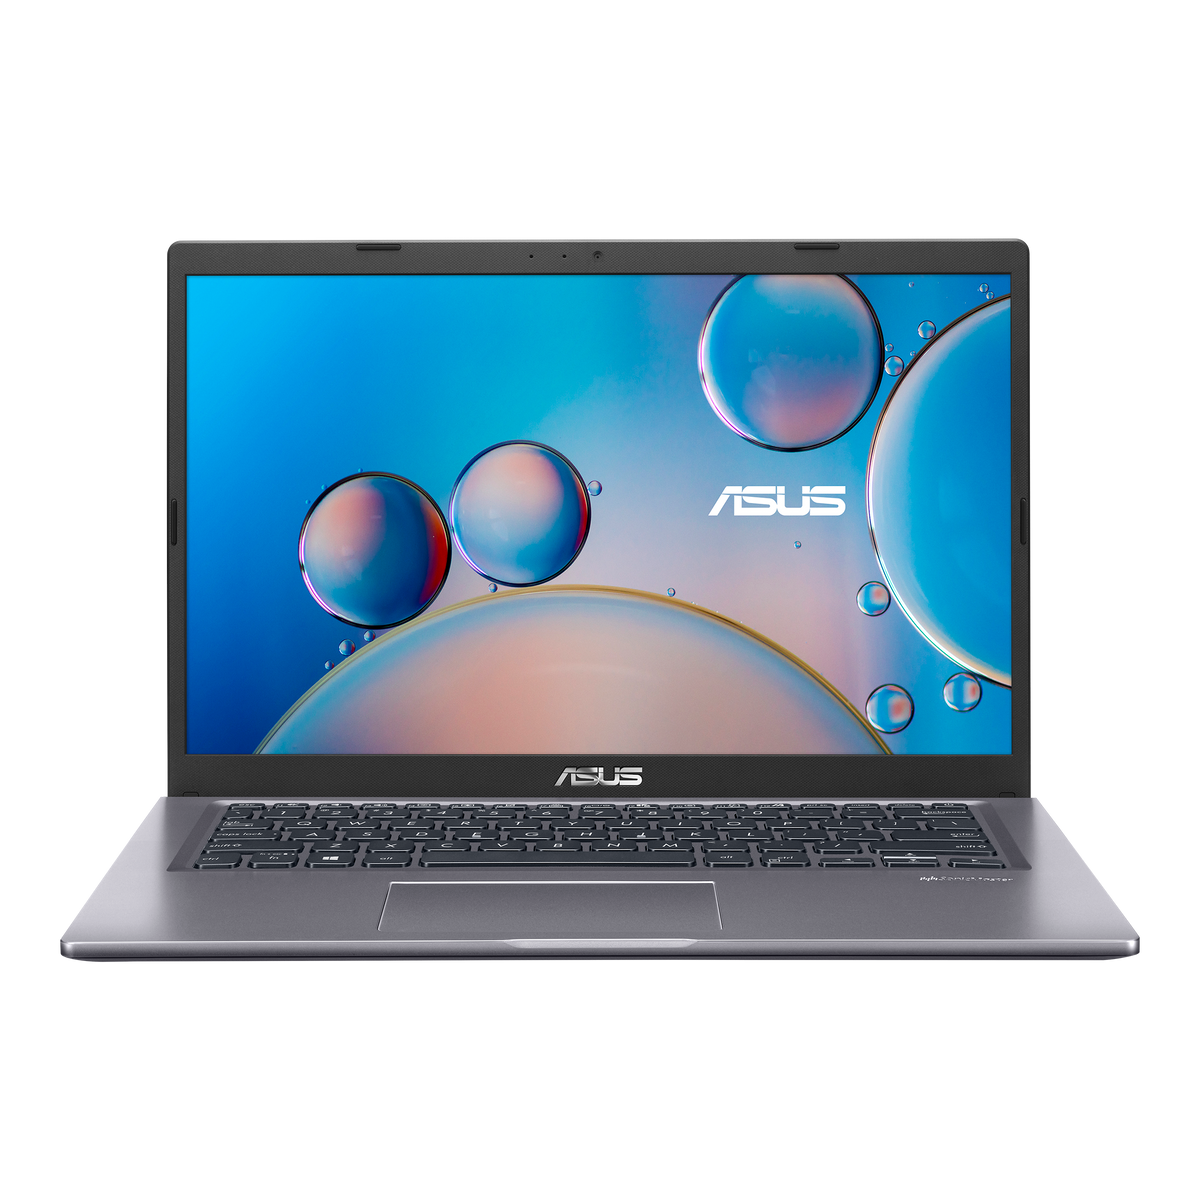 Asus Expertbook Y1411CDA 14" Laptop AMD Ryzen 5 1TB HDD+256GB SSD 8GB RAM - Very Good Condition